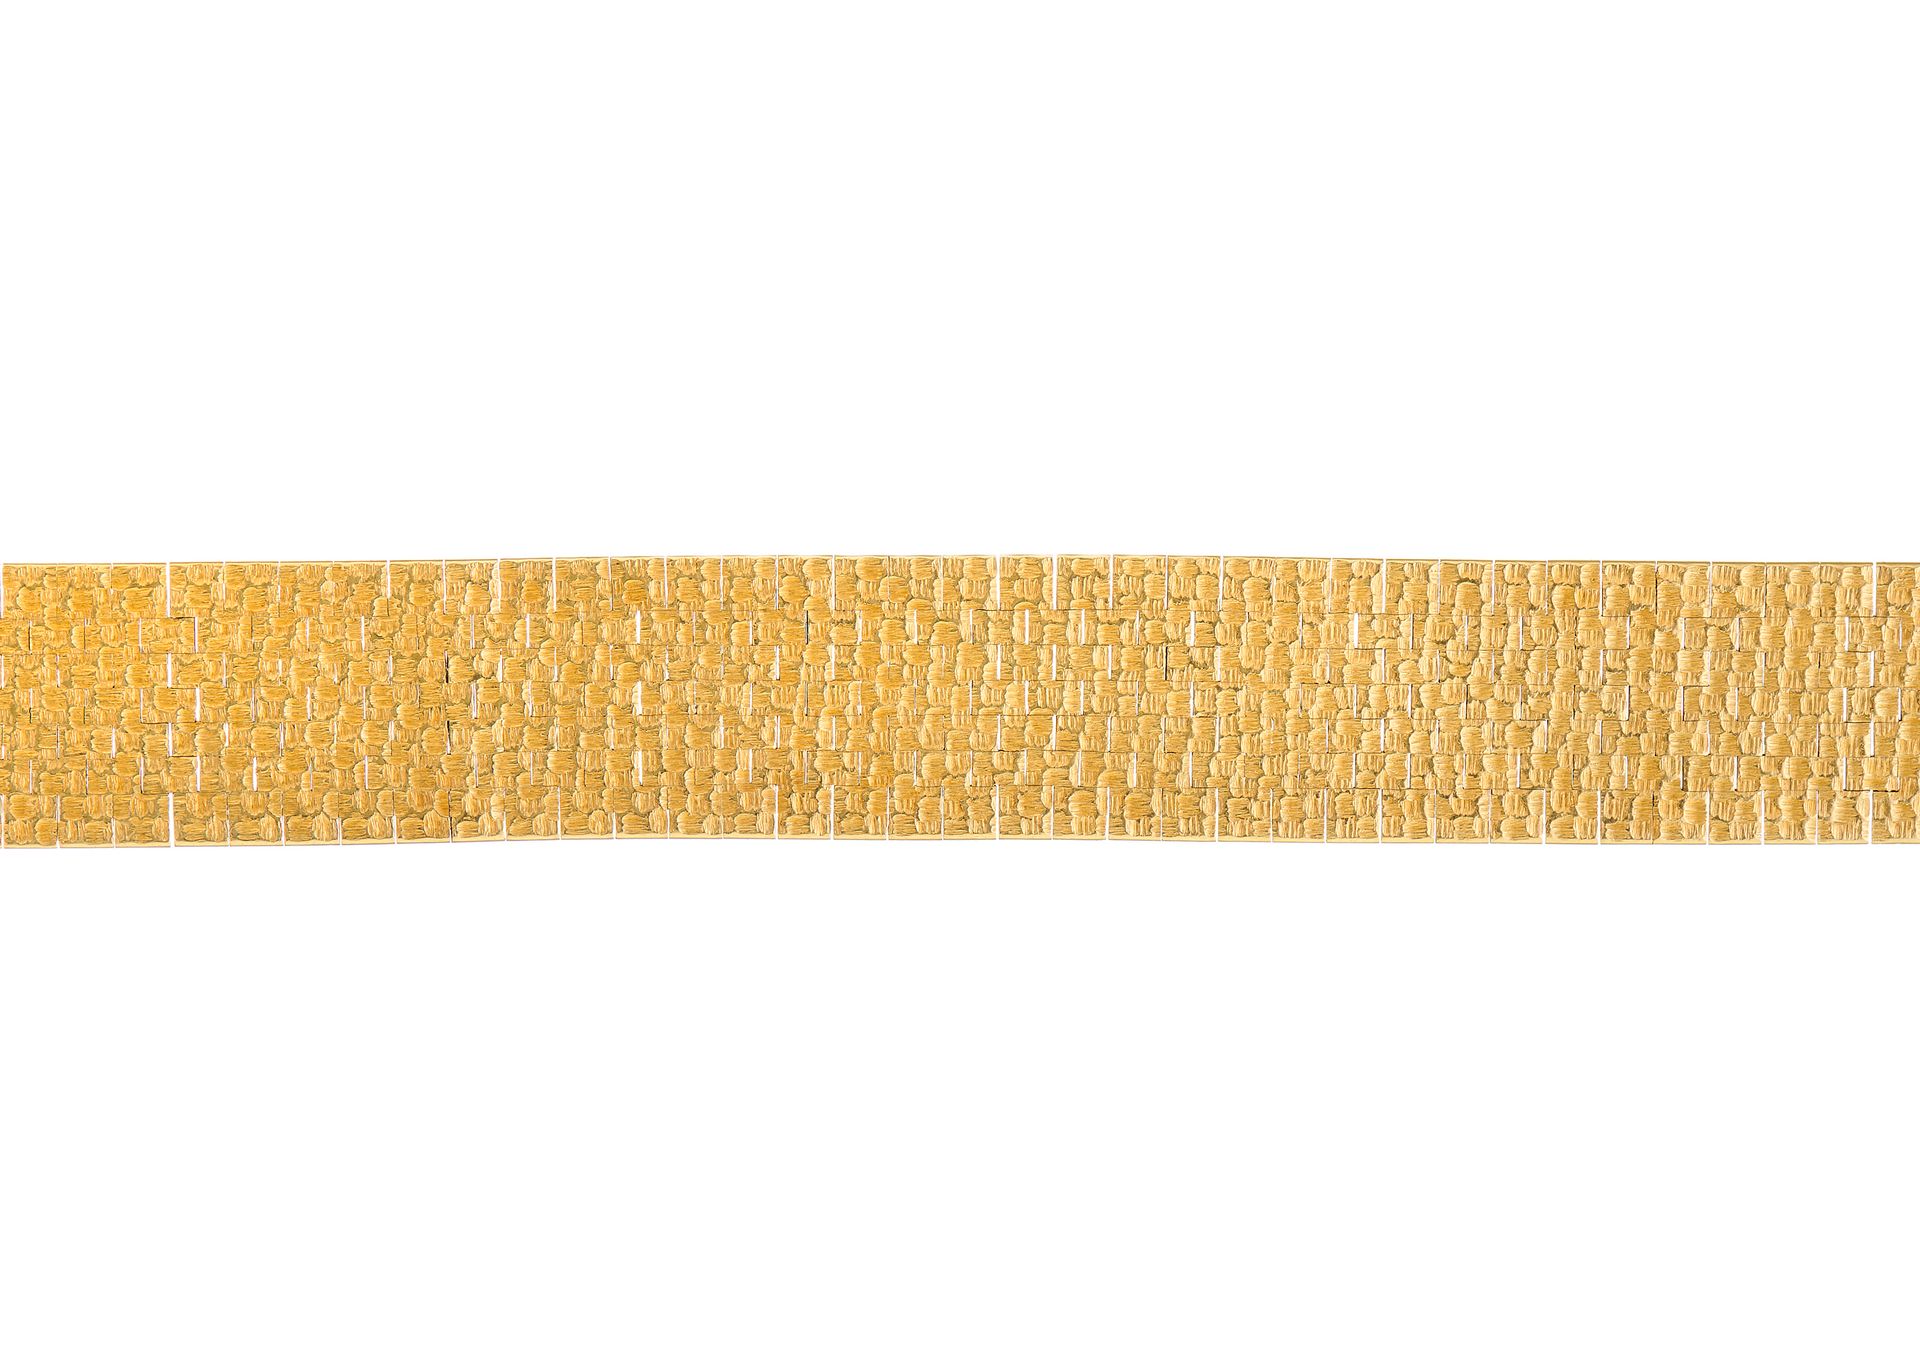 Null 一条20世纪70年代的金质手链，部分隐藏式按扣，有外国标记，长20厘米，重76.2克 - 总体状况良好 - 有一些与年代和磨损相符的变色 - 链节有轻&hellip;